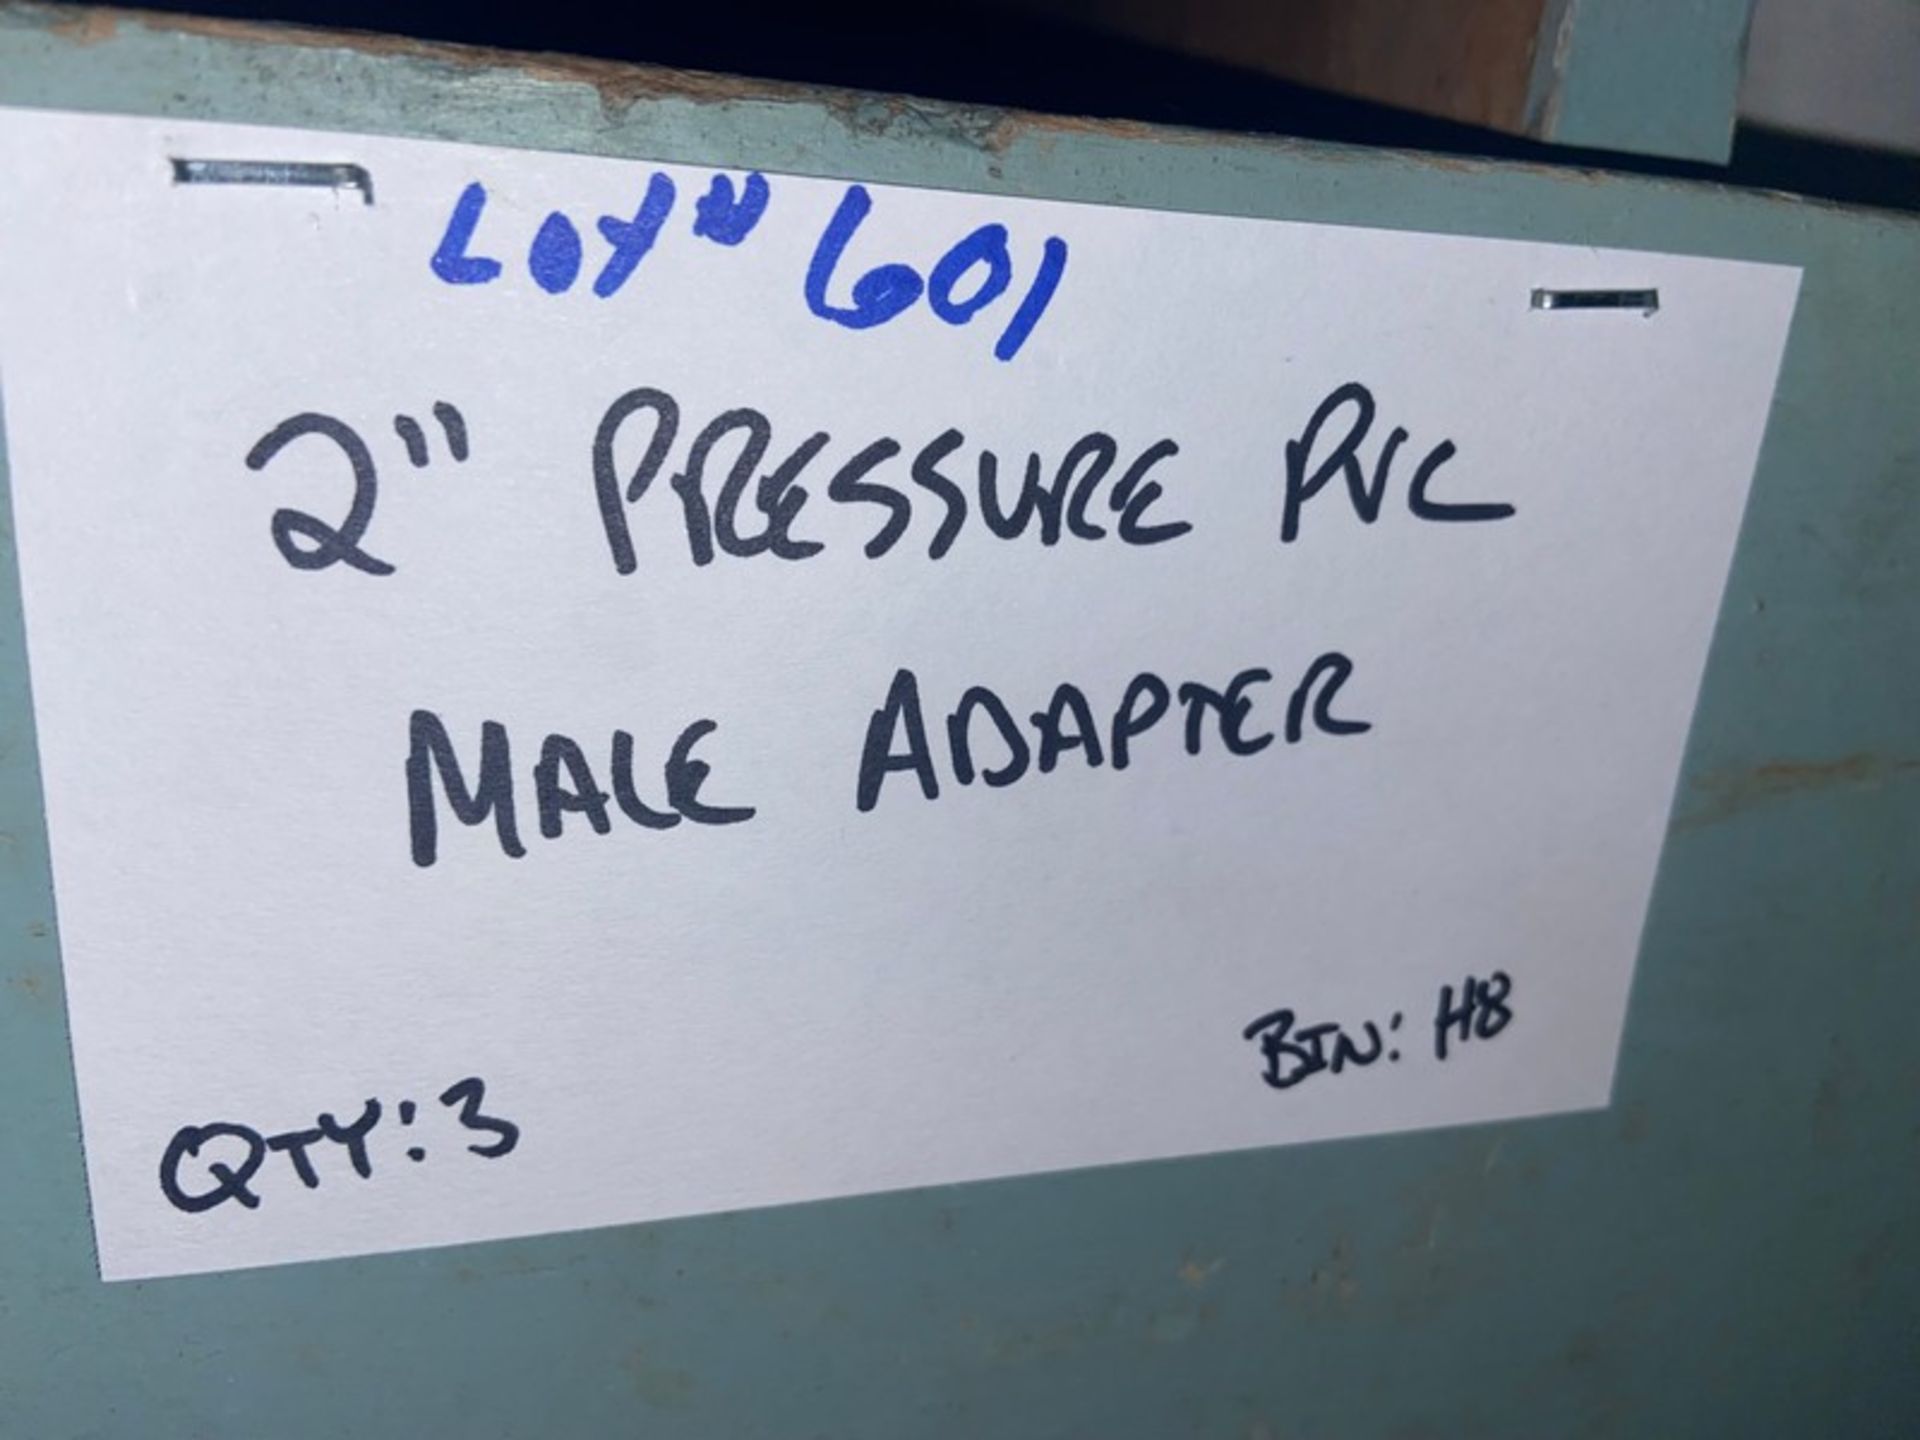 (15) 2” Pressure PVC TEE (Bin:H8); (1) 2” Pressure PVC Union (Bin:H8); (3) 2” Pressure PVC Male - Bild 6 aus 6